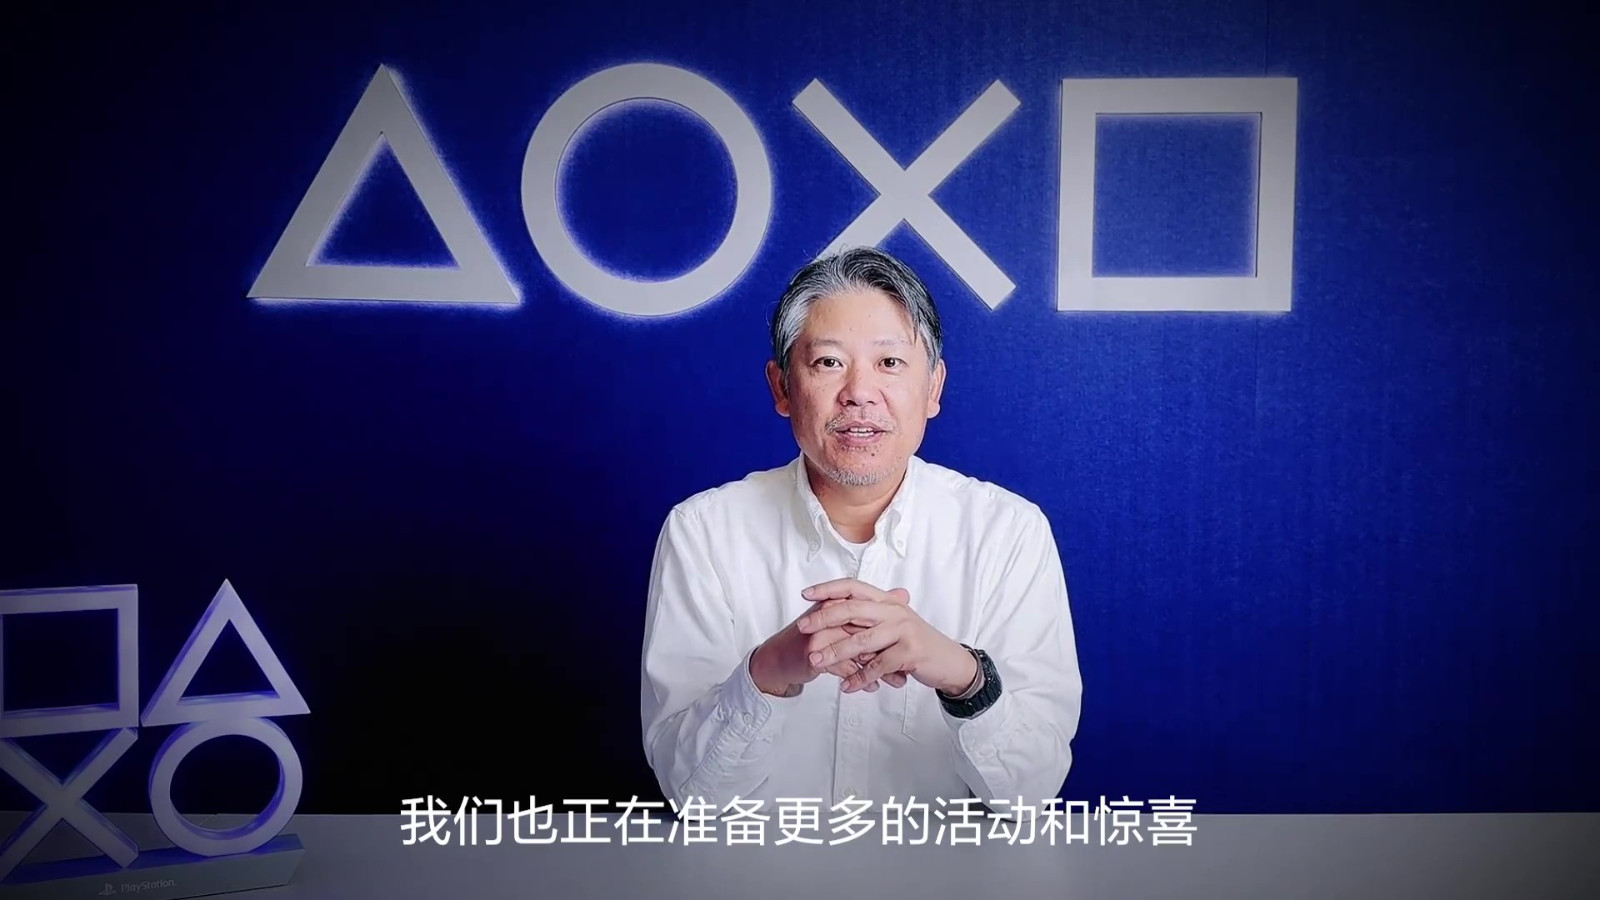 PlayStation5国行上市两周年 江口达雄出镜感谢中国玩家 二次世界 第7张